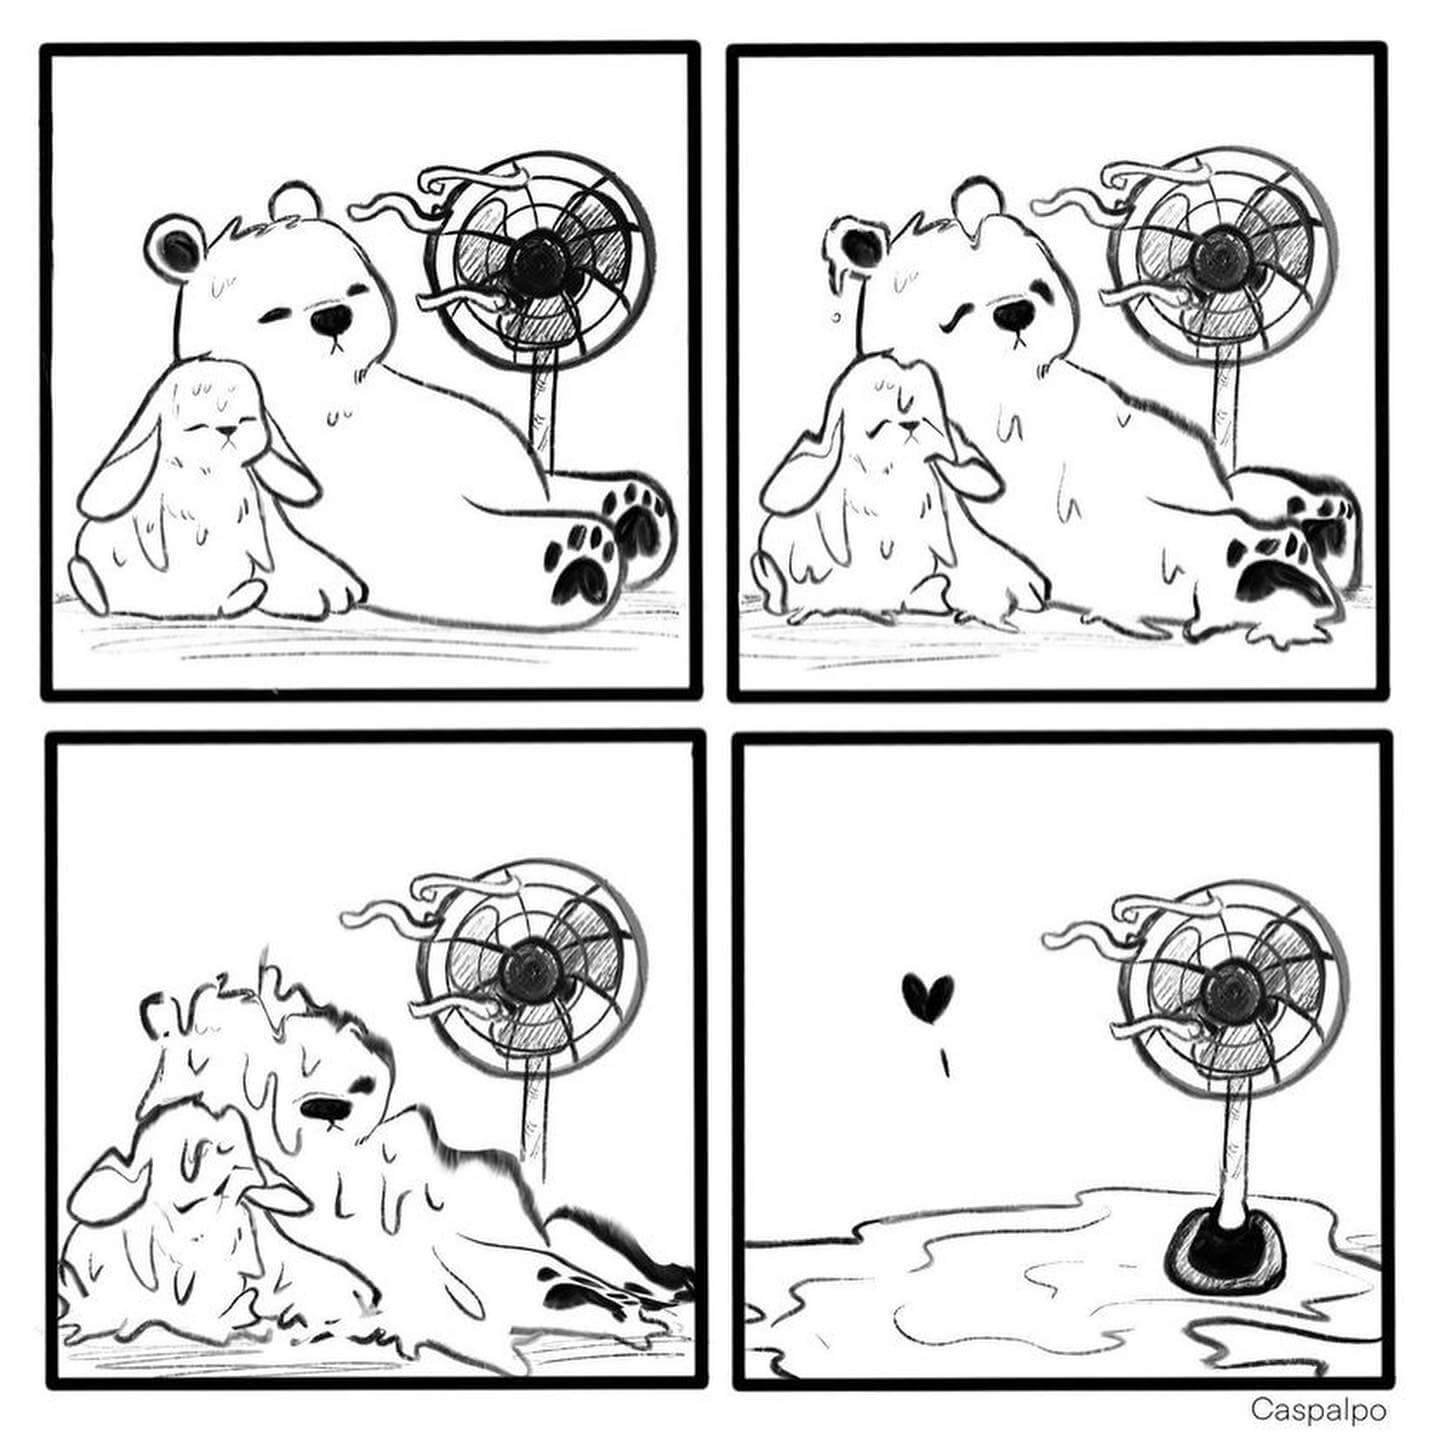 Cute Comics About Love